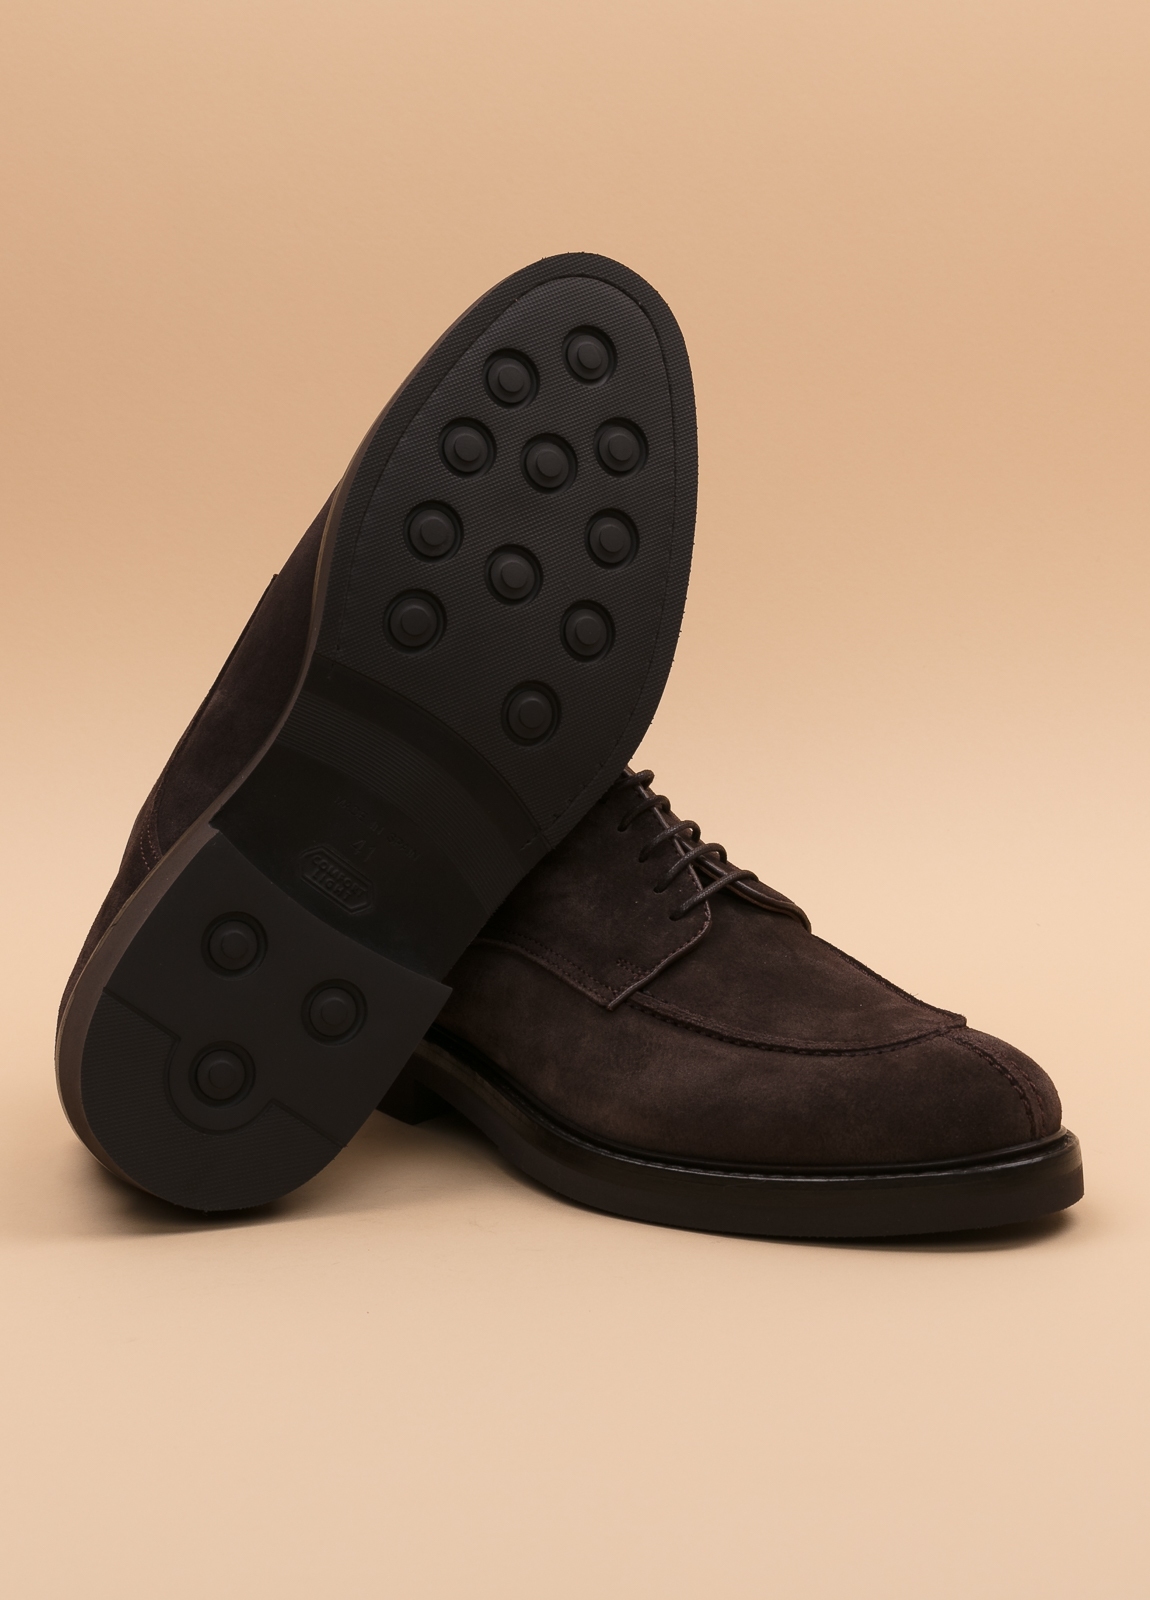 Zapato sport wear furest colección marrón oscuro - Ítem3